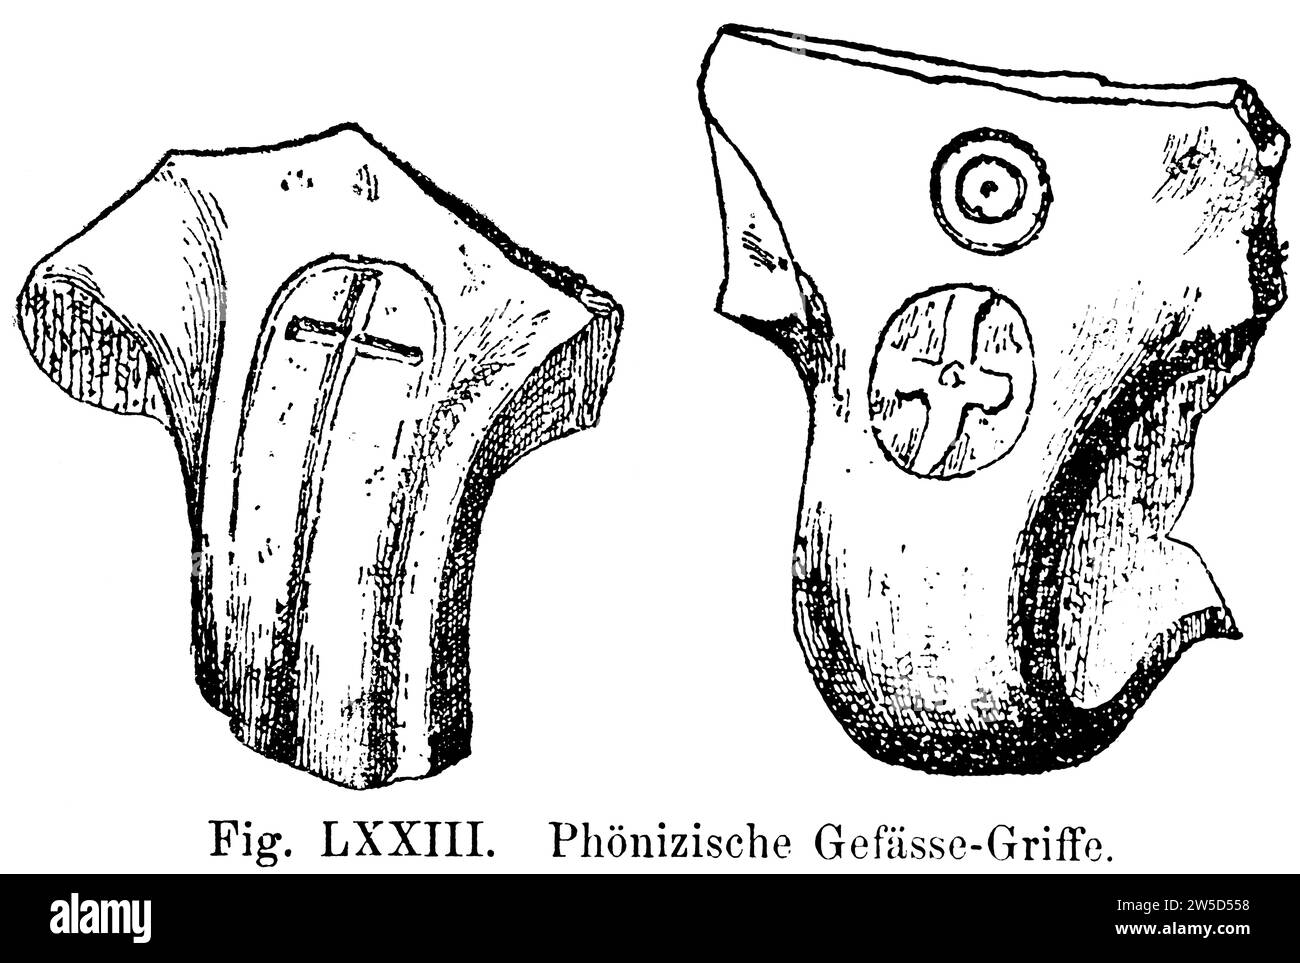 Vaisseaux phéniciens avec poignée, argile matérielle, divers signes, croix, illustration historique 1886 Banque D'Images